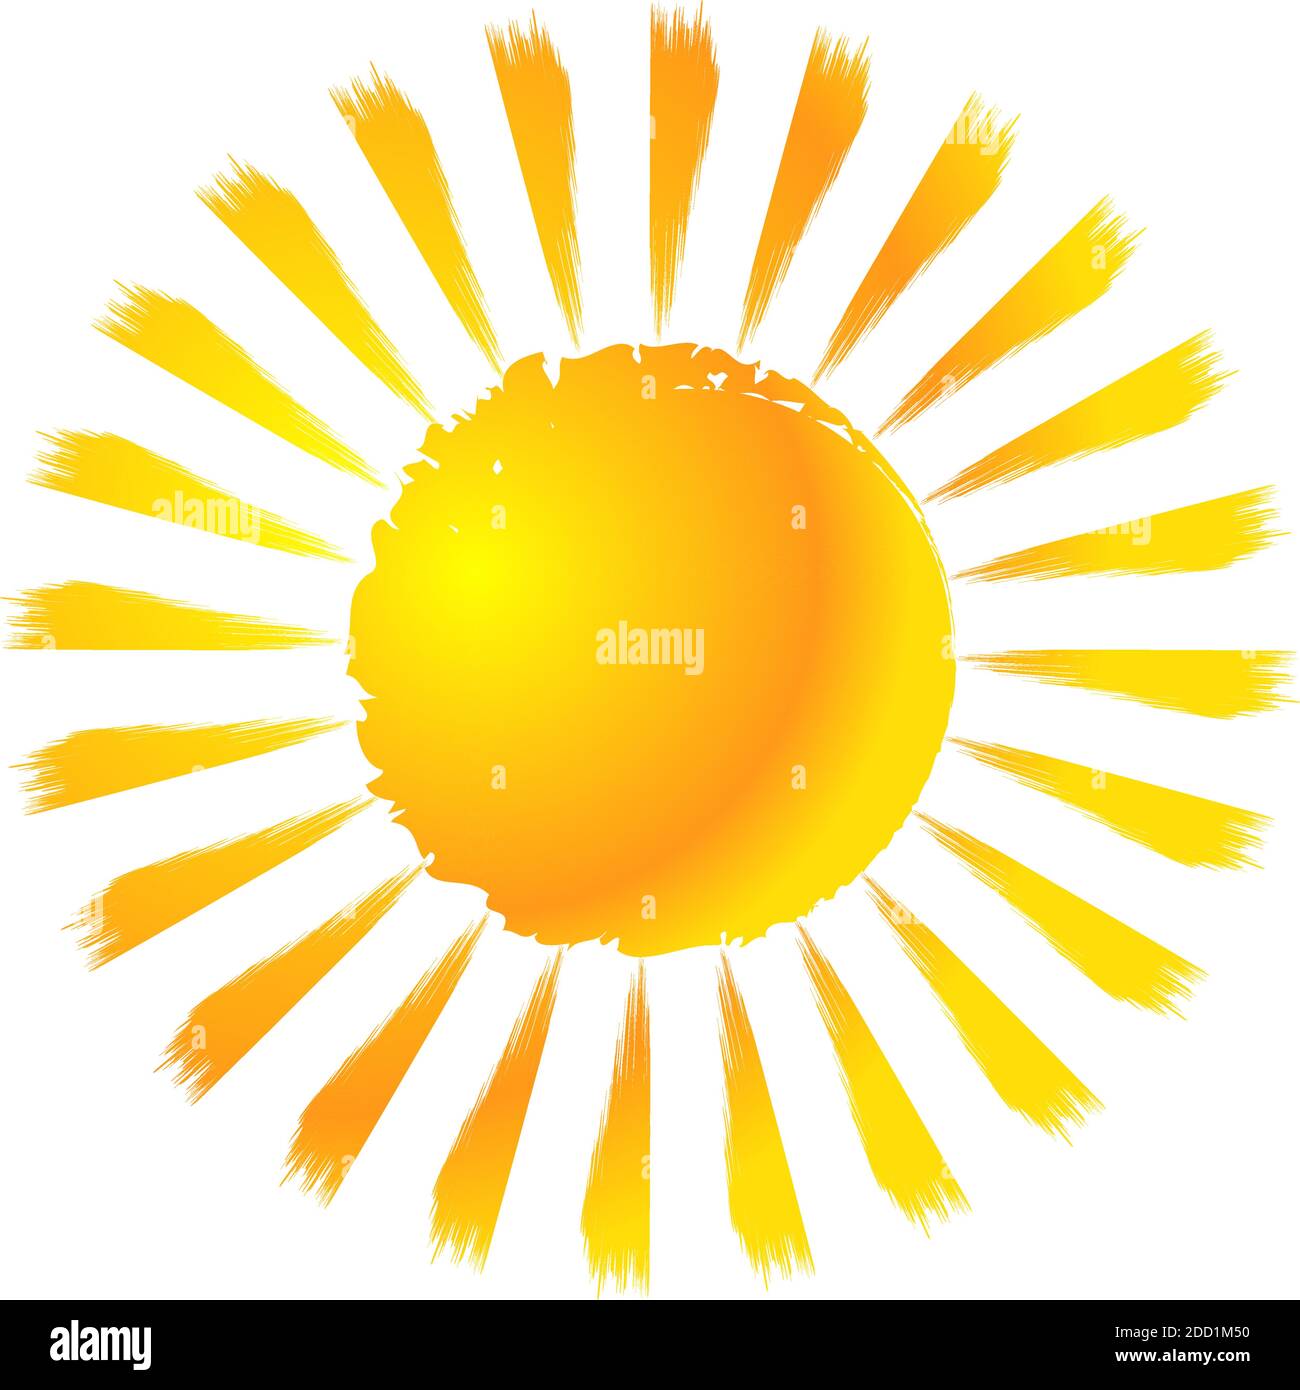 Grungy, grunge, strukturierte Sonne Clip-Art-Design-Element. Bemalte,  skizzenhafte Sonnenzeichnung. Pinsel, Pinselstrich Effekt Sonne – Stock  Vektor Illustration, CL Stock-Vektorgrafik - Alamy